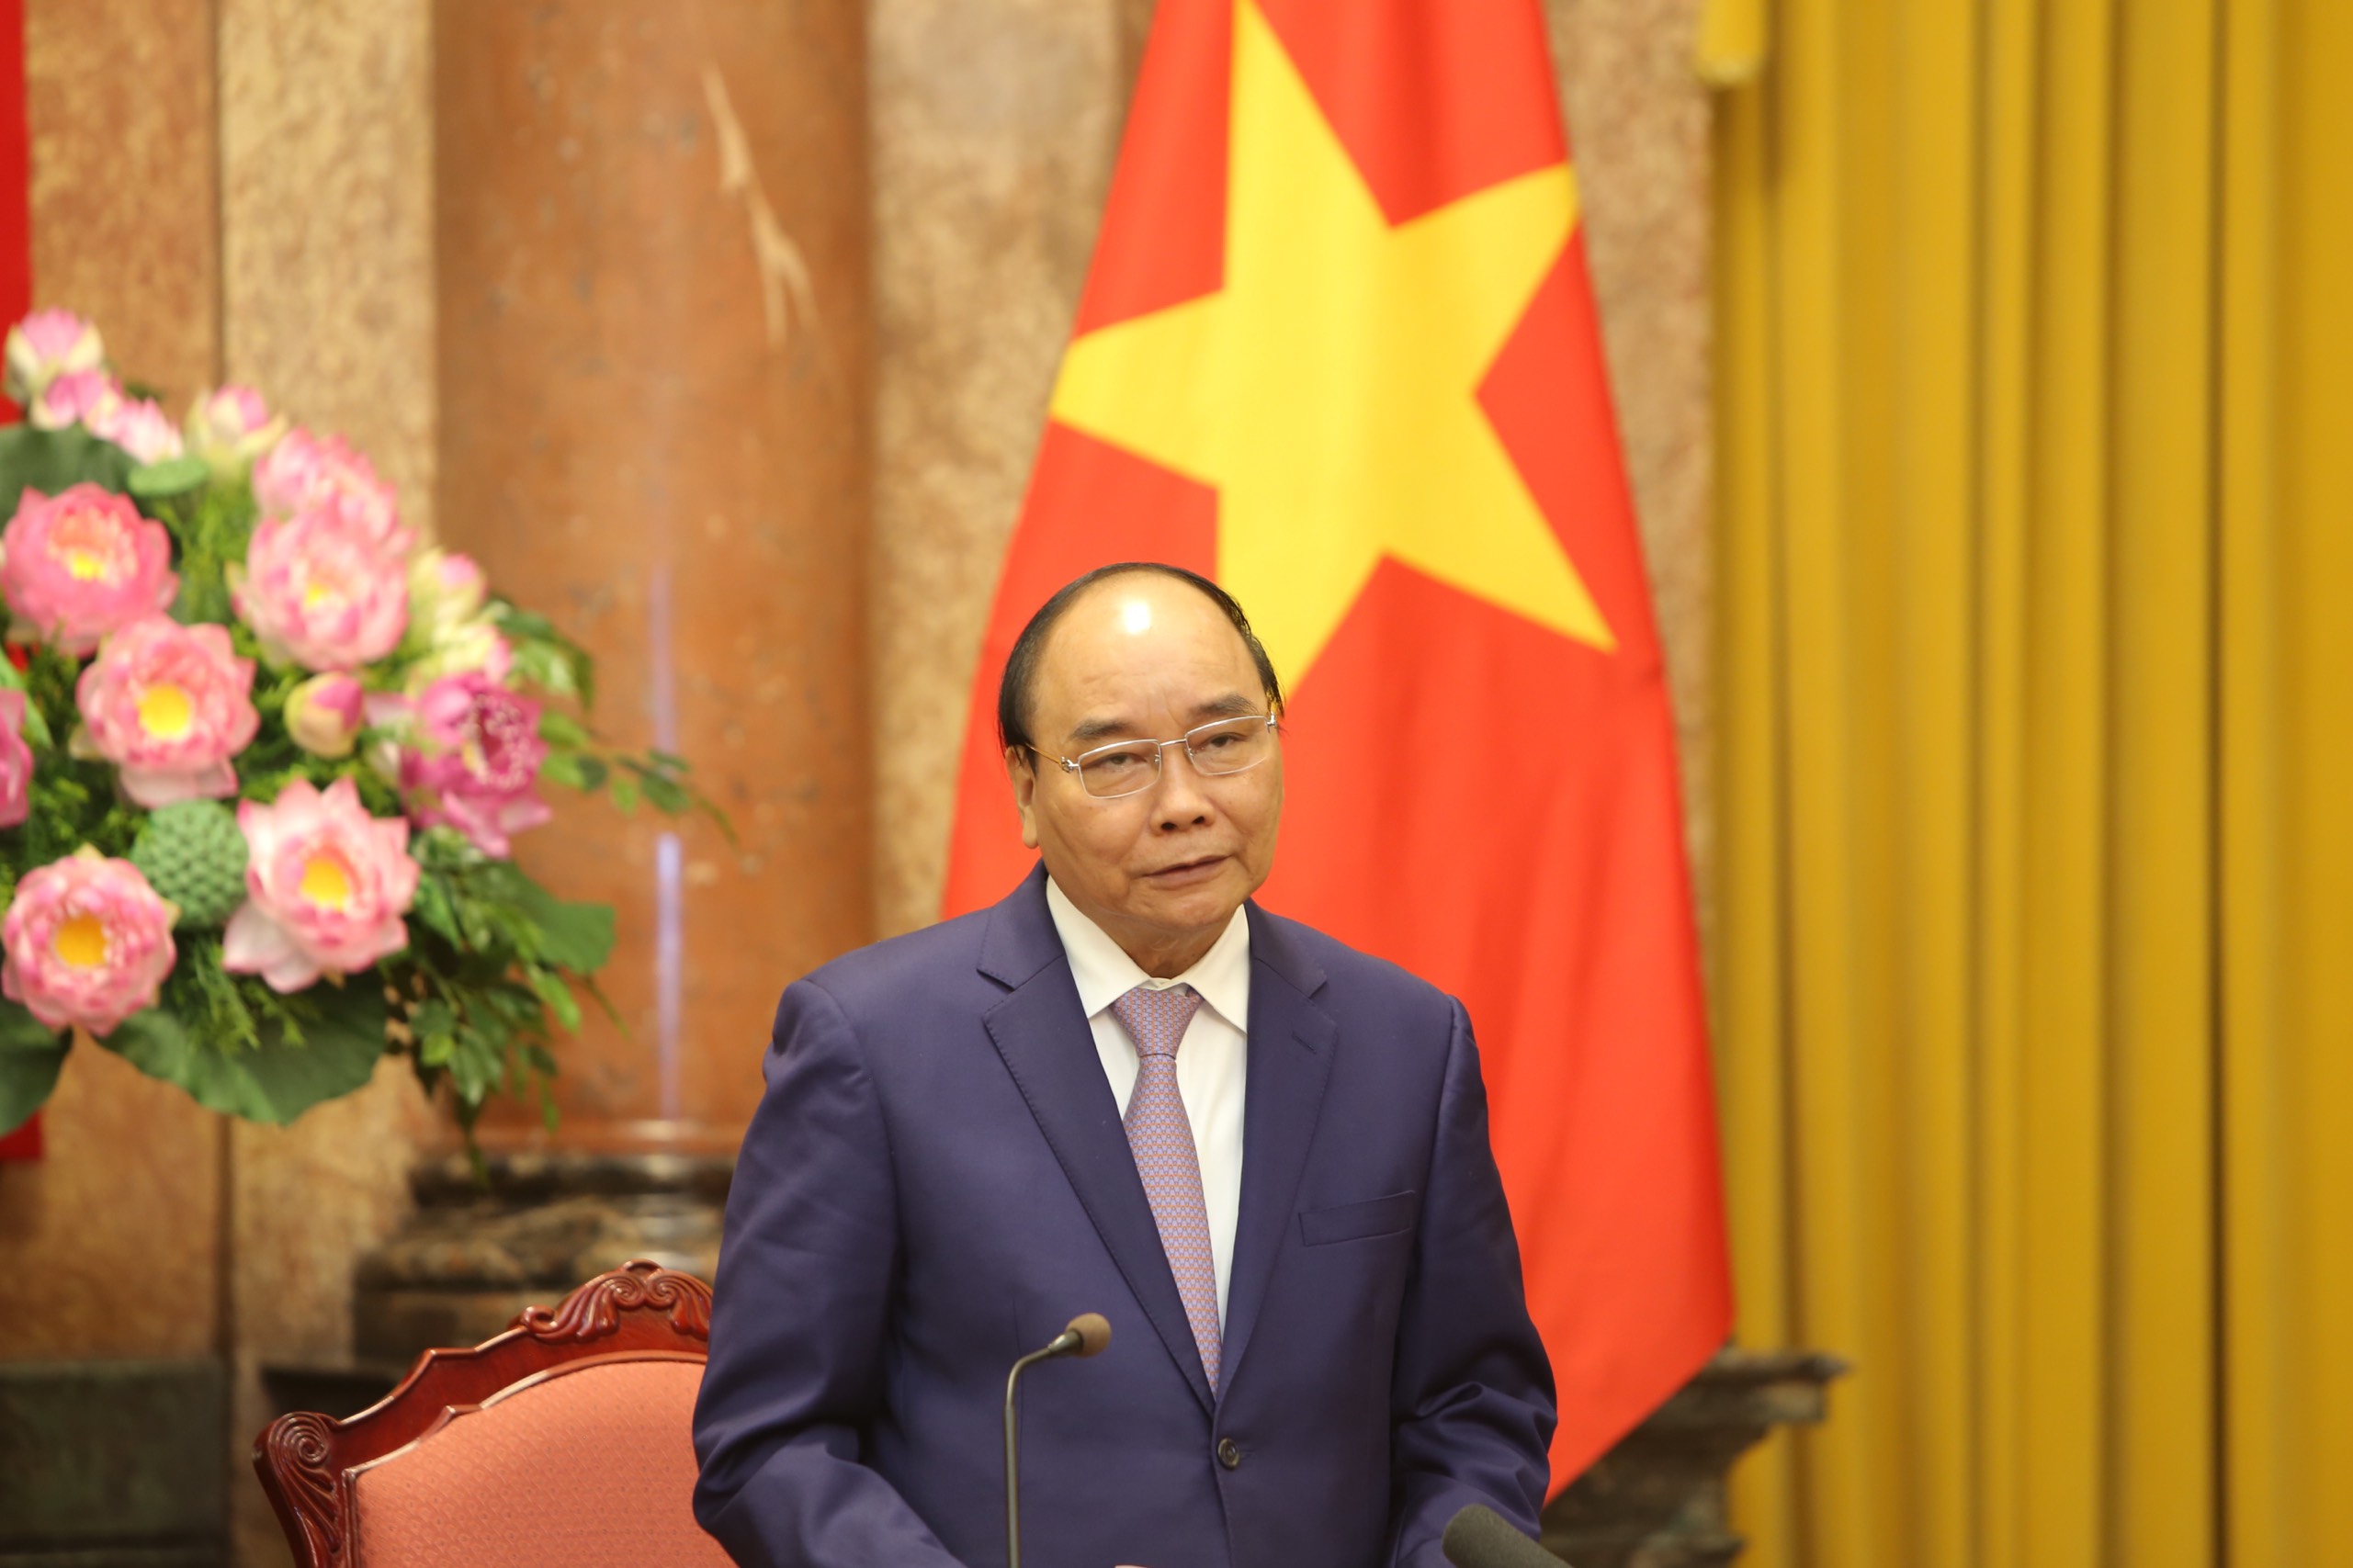 Chủ tịch nước Nguyễn Xuân Phúc: Hãy trao một bó đuốc, thanh niên sẽ tìm ra lối đi